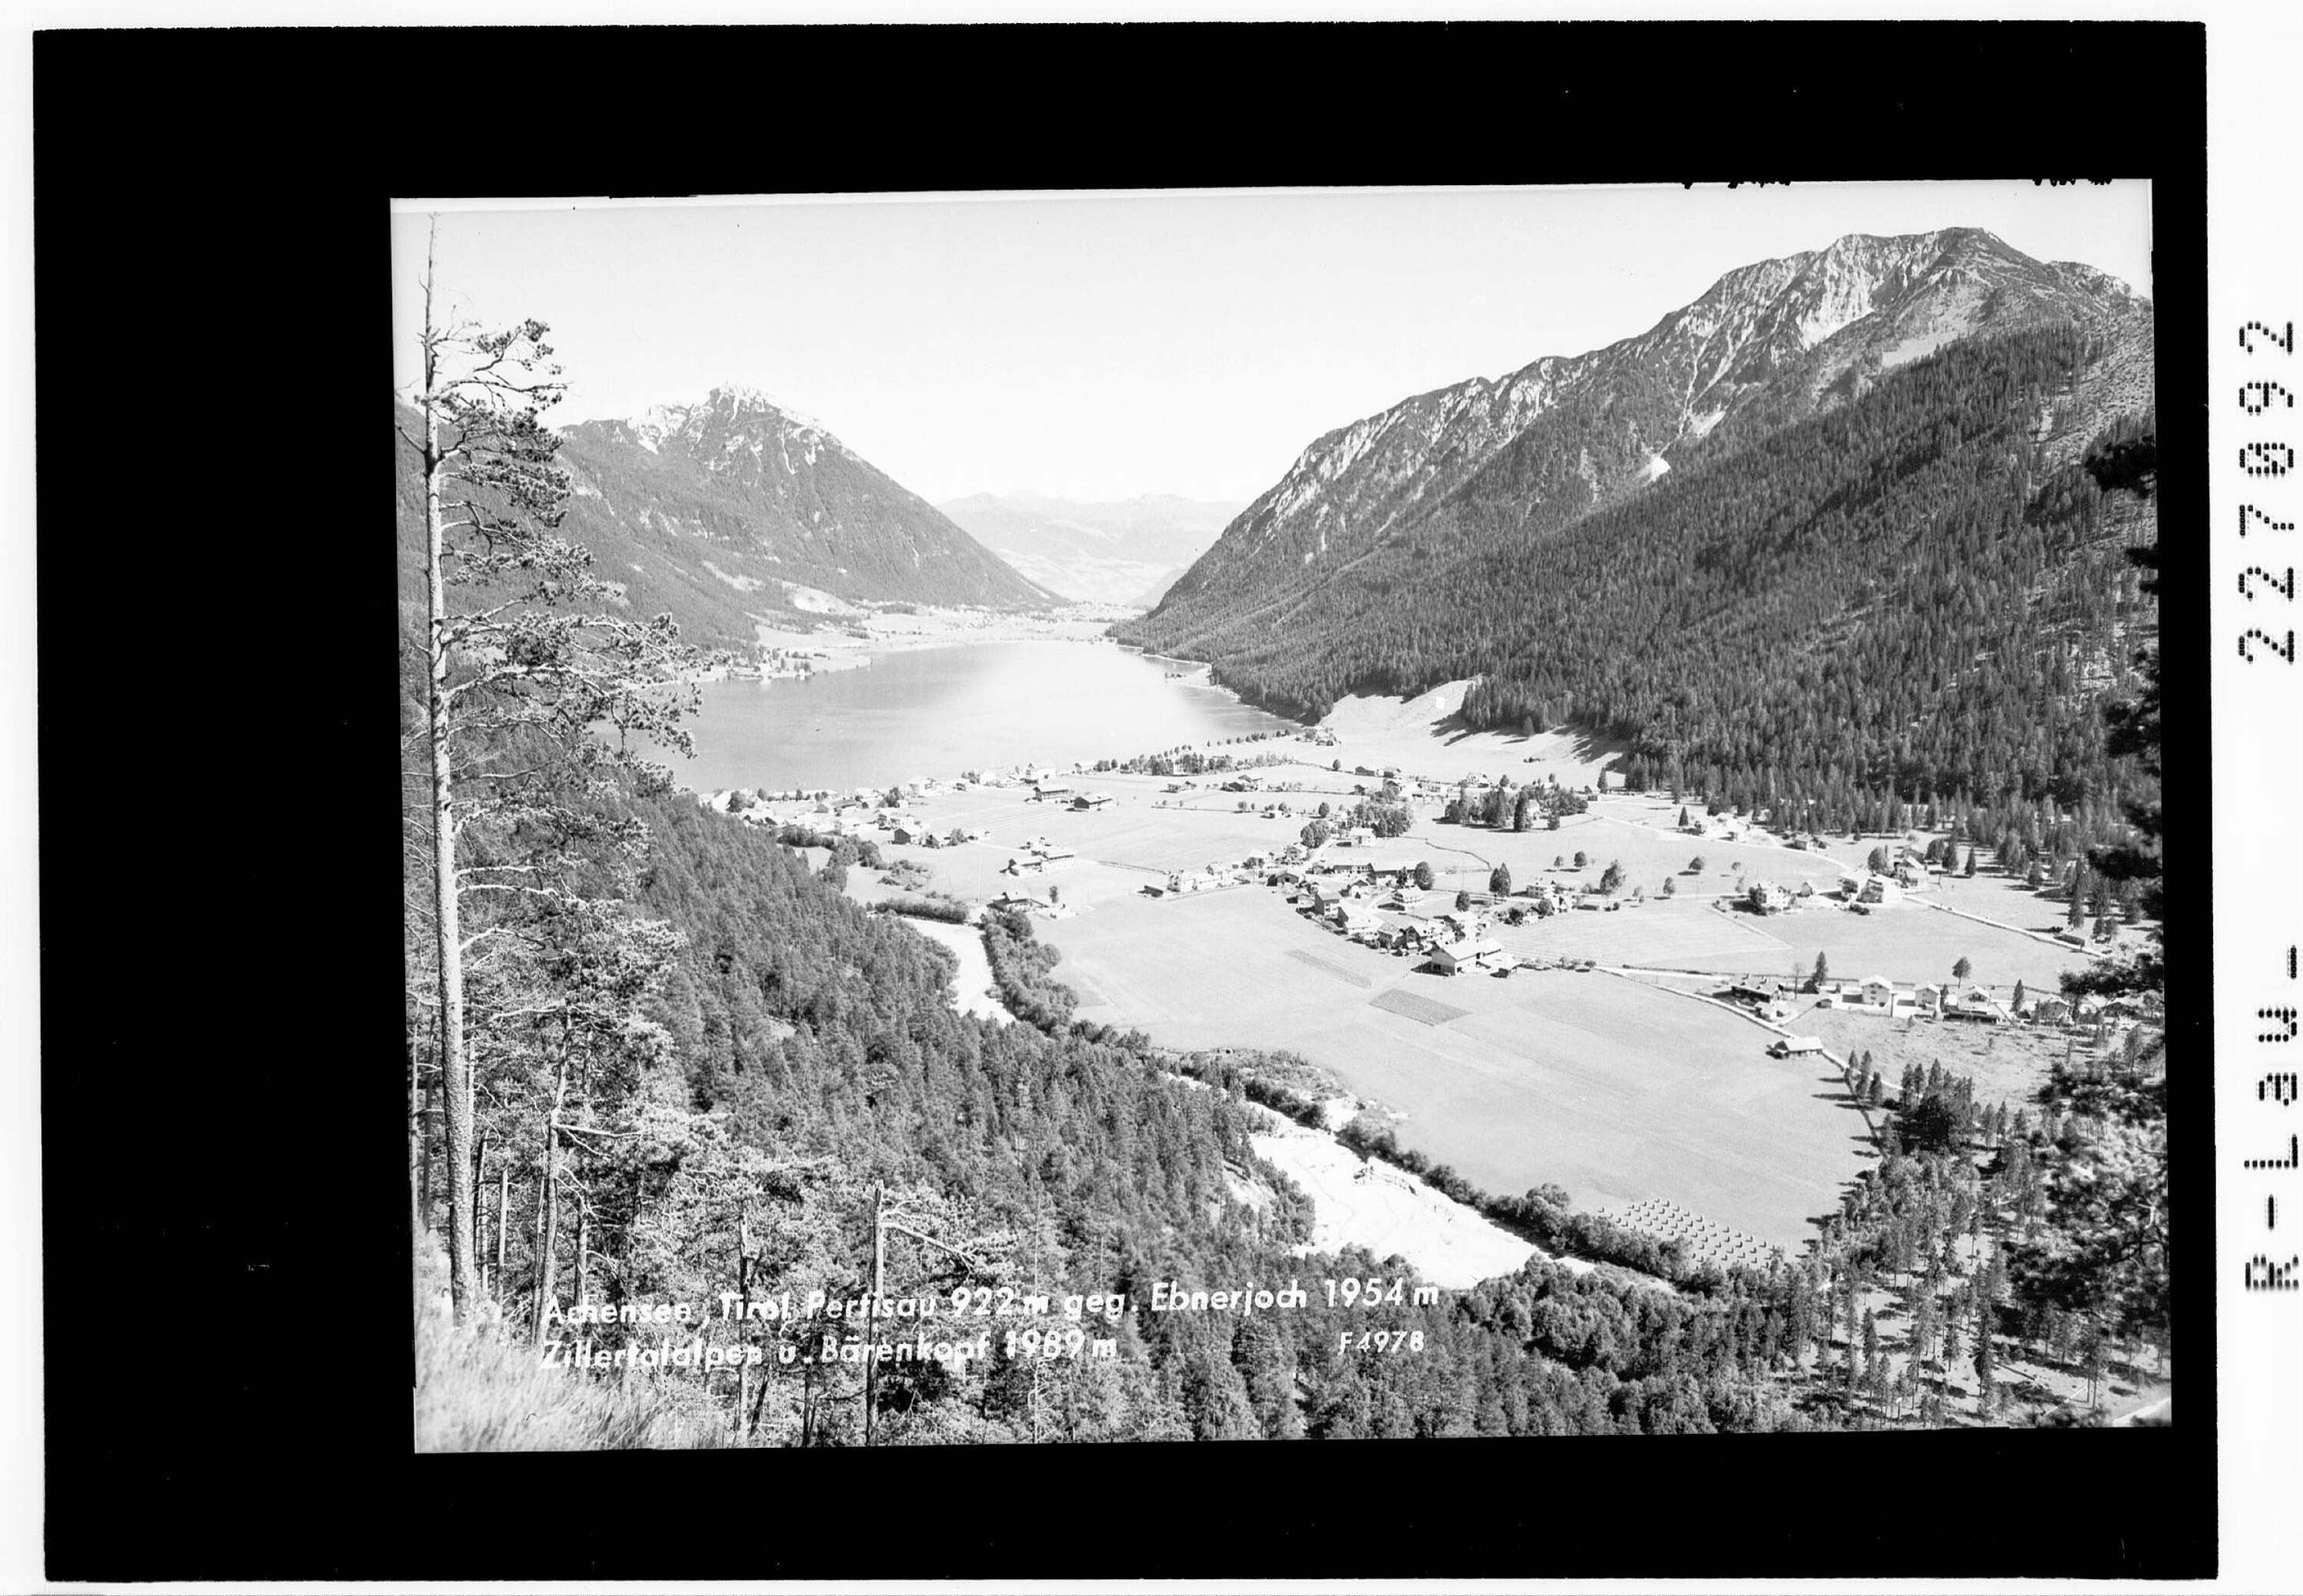 Achensee / Tirol / Pertisau 922 m gegen Ebnerjoch 1954 m - Zillertalalpen und Bärenkopf></div>


    <hr>
    <div class=